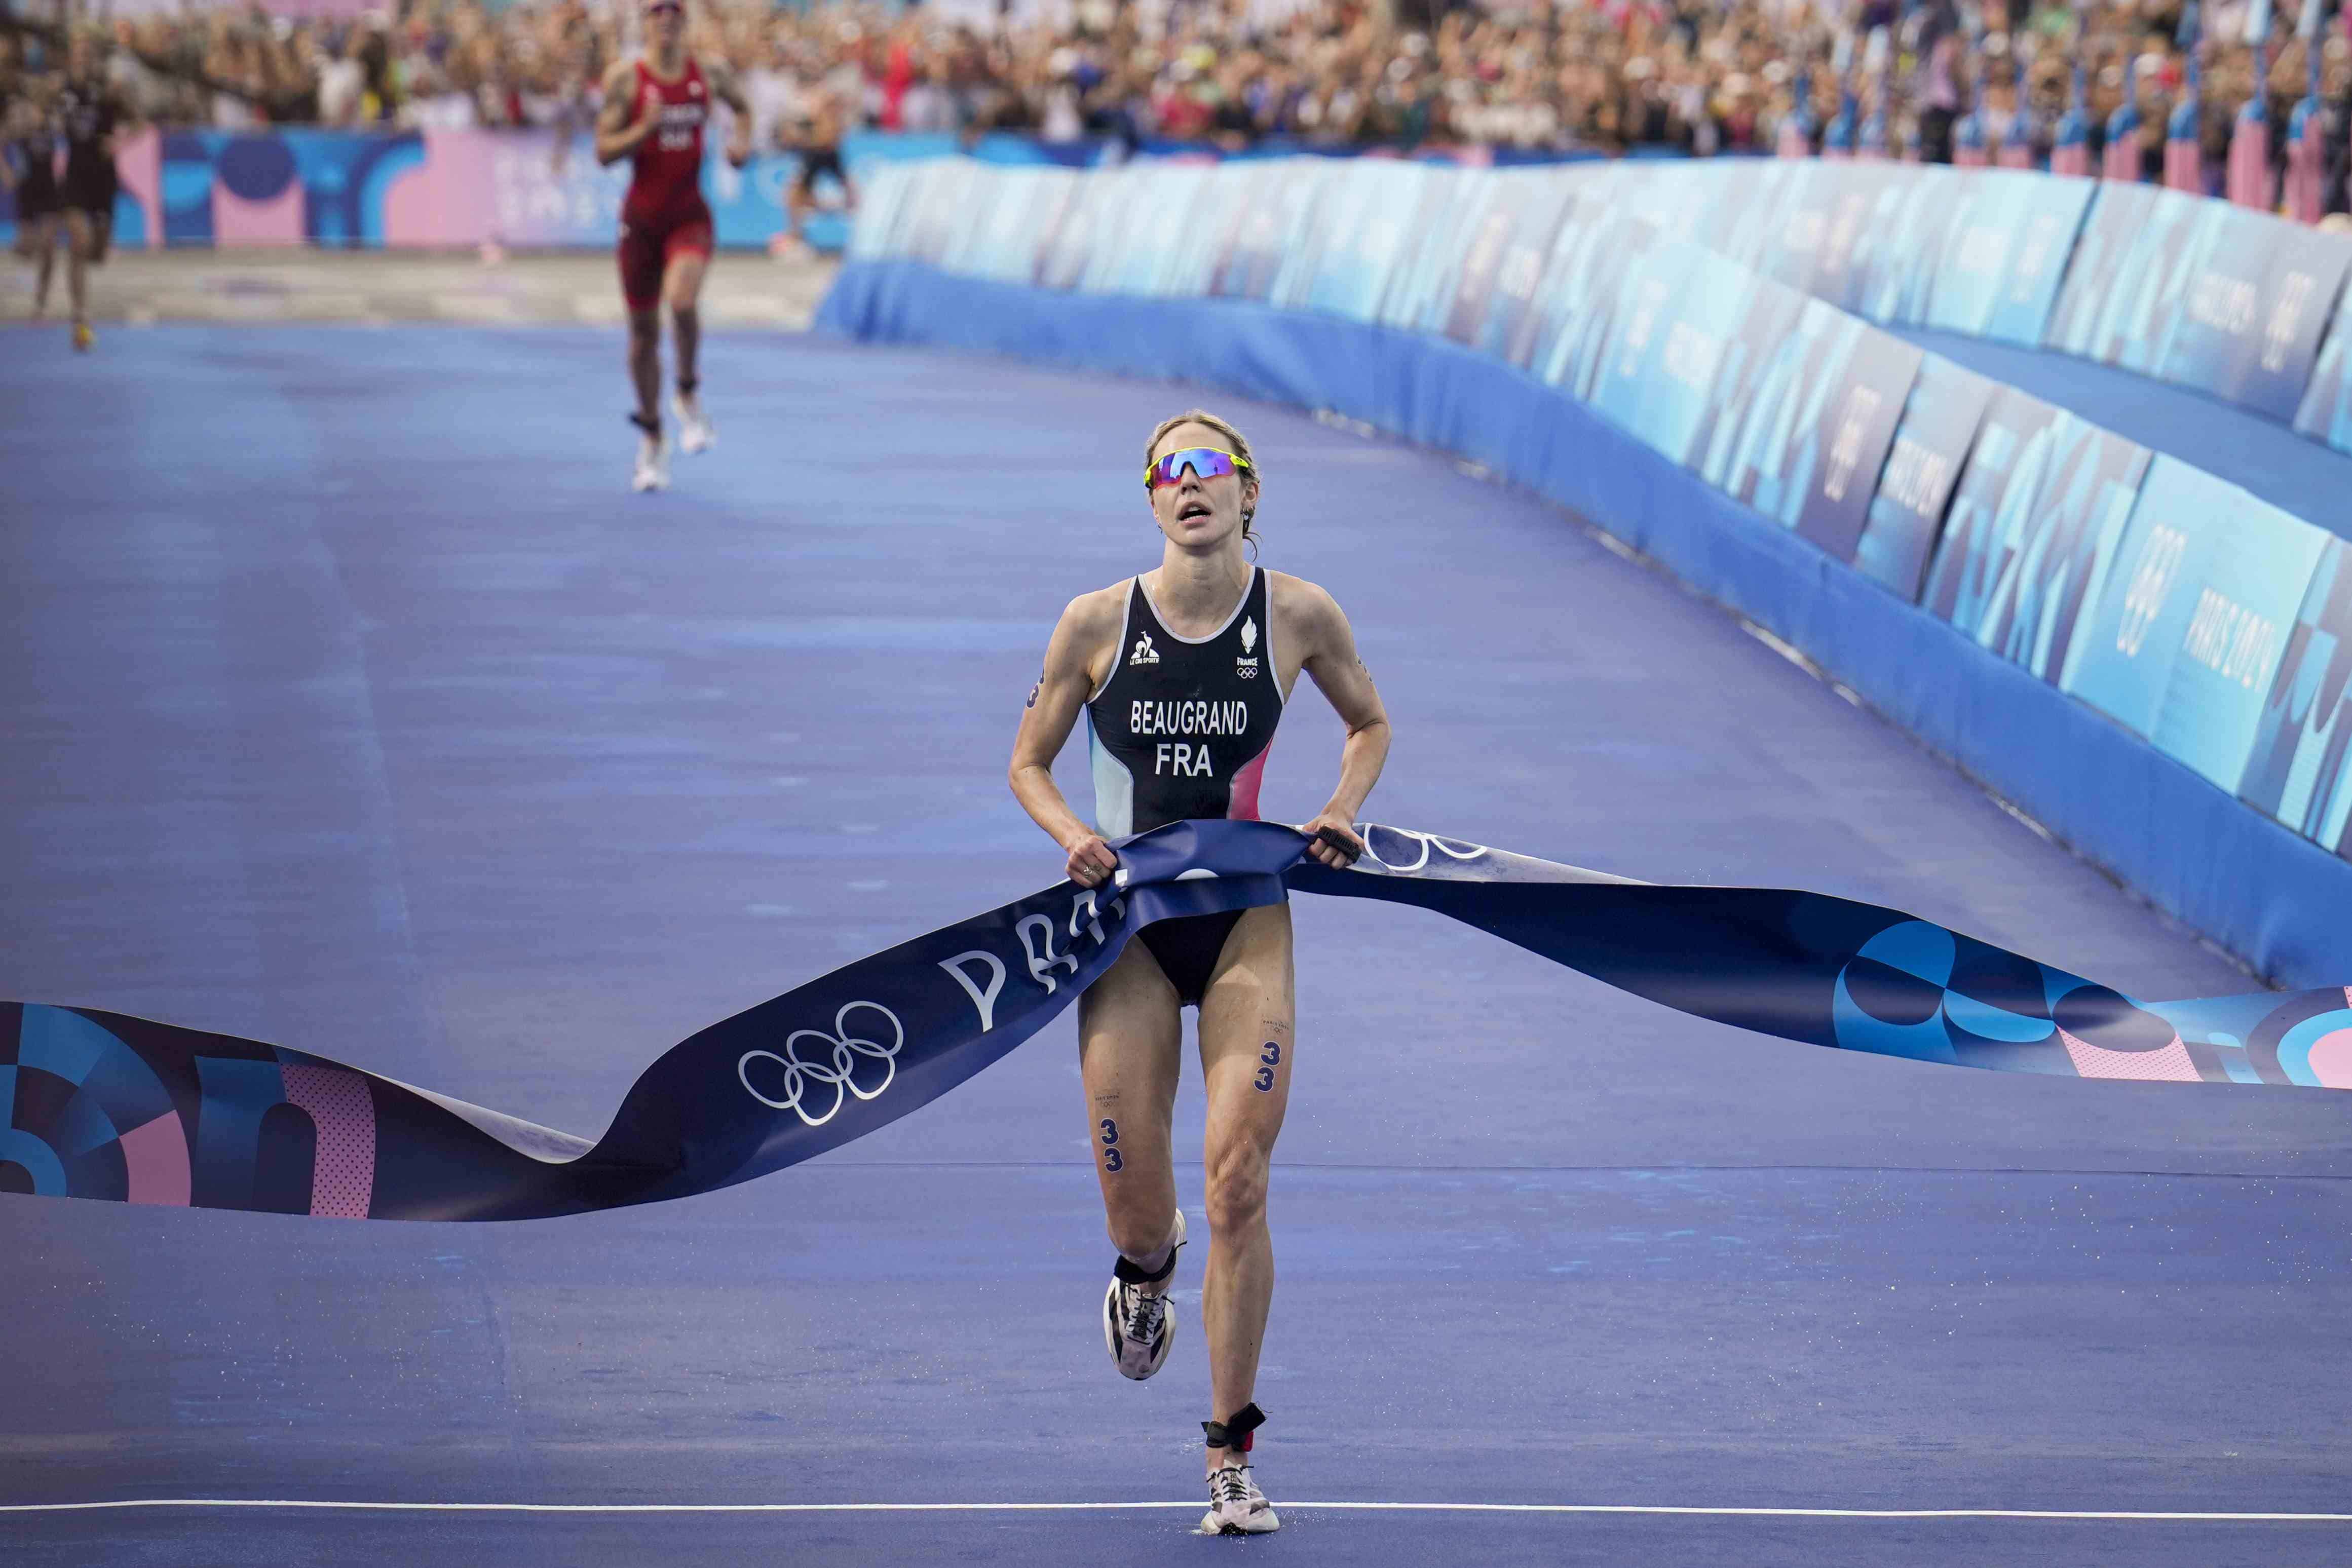 La francesa Cassandre Beaugrand cruza la meta al ganar el triatlón femenino de los Juegos Olímpicos de París, el miércoles 31 de julio de 2024. <br><br>